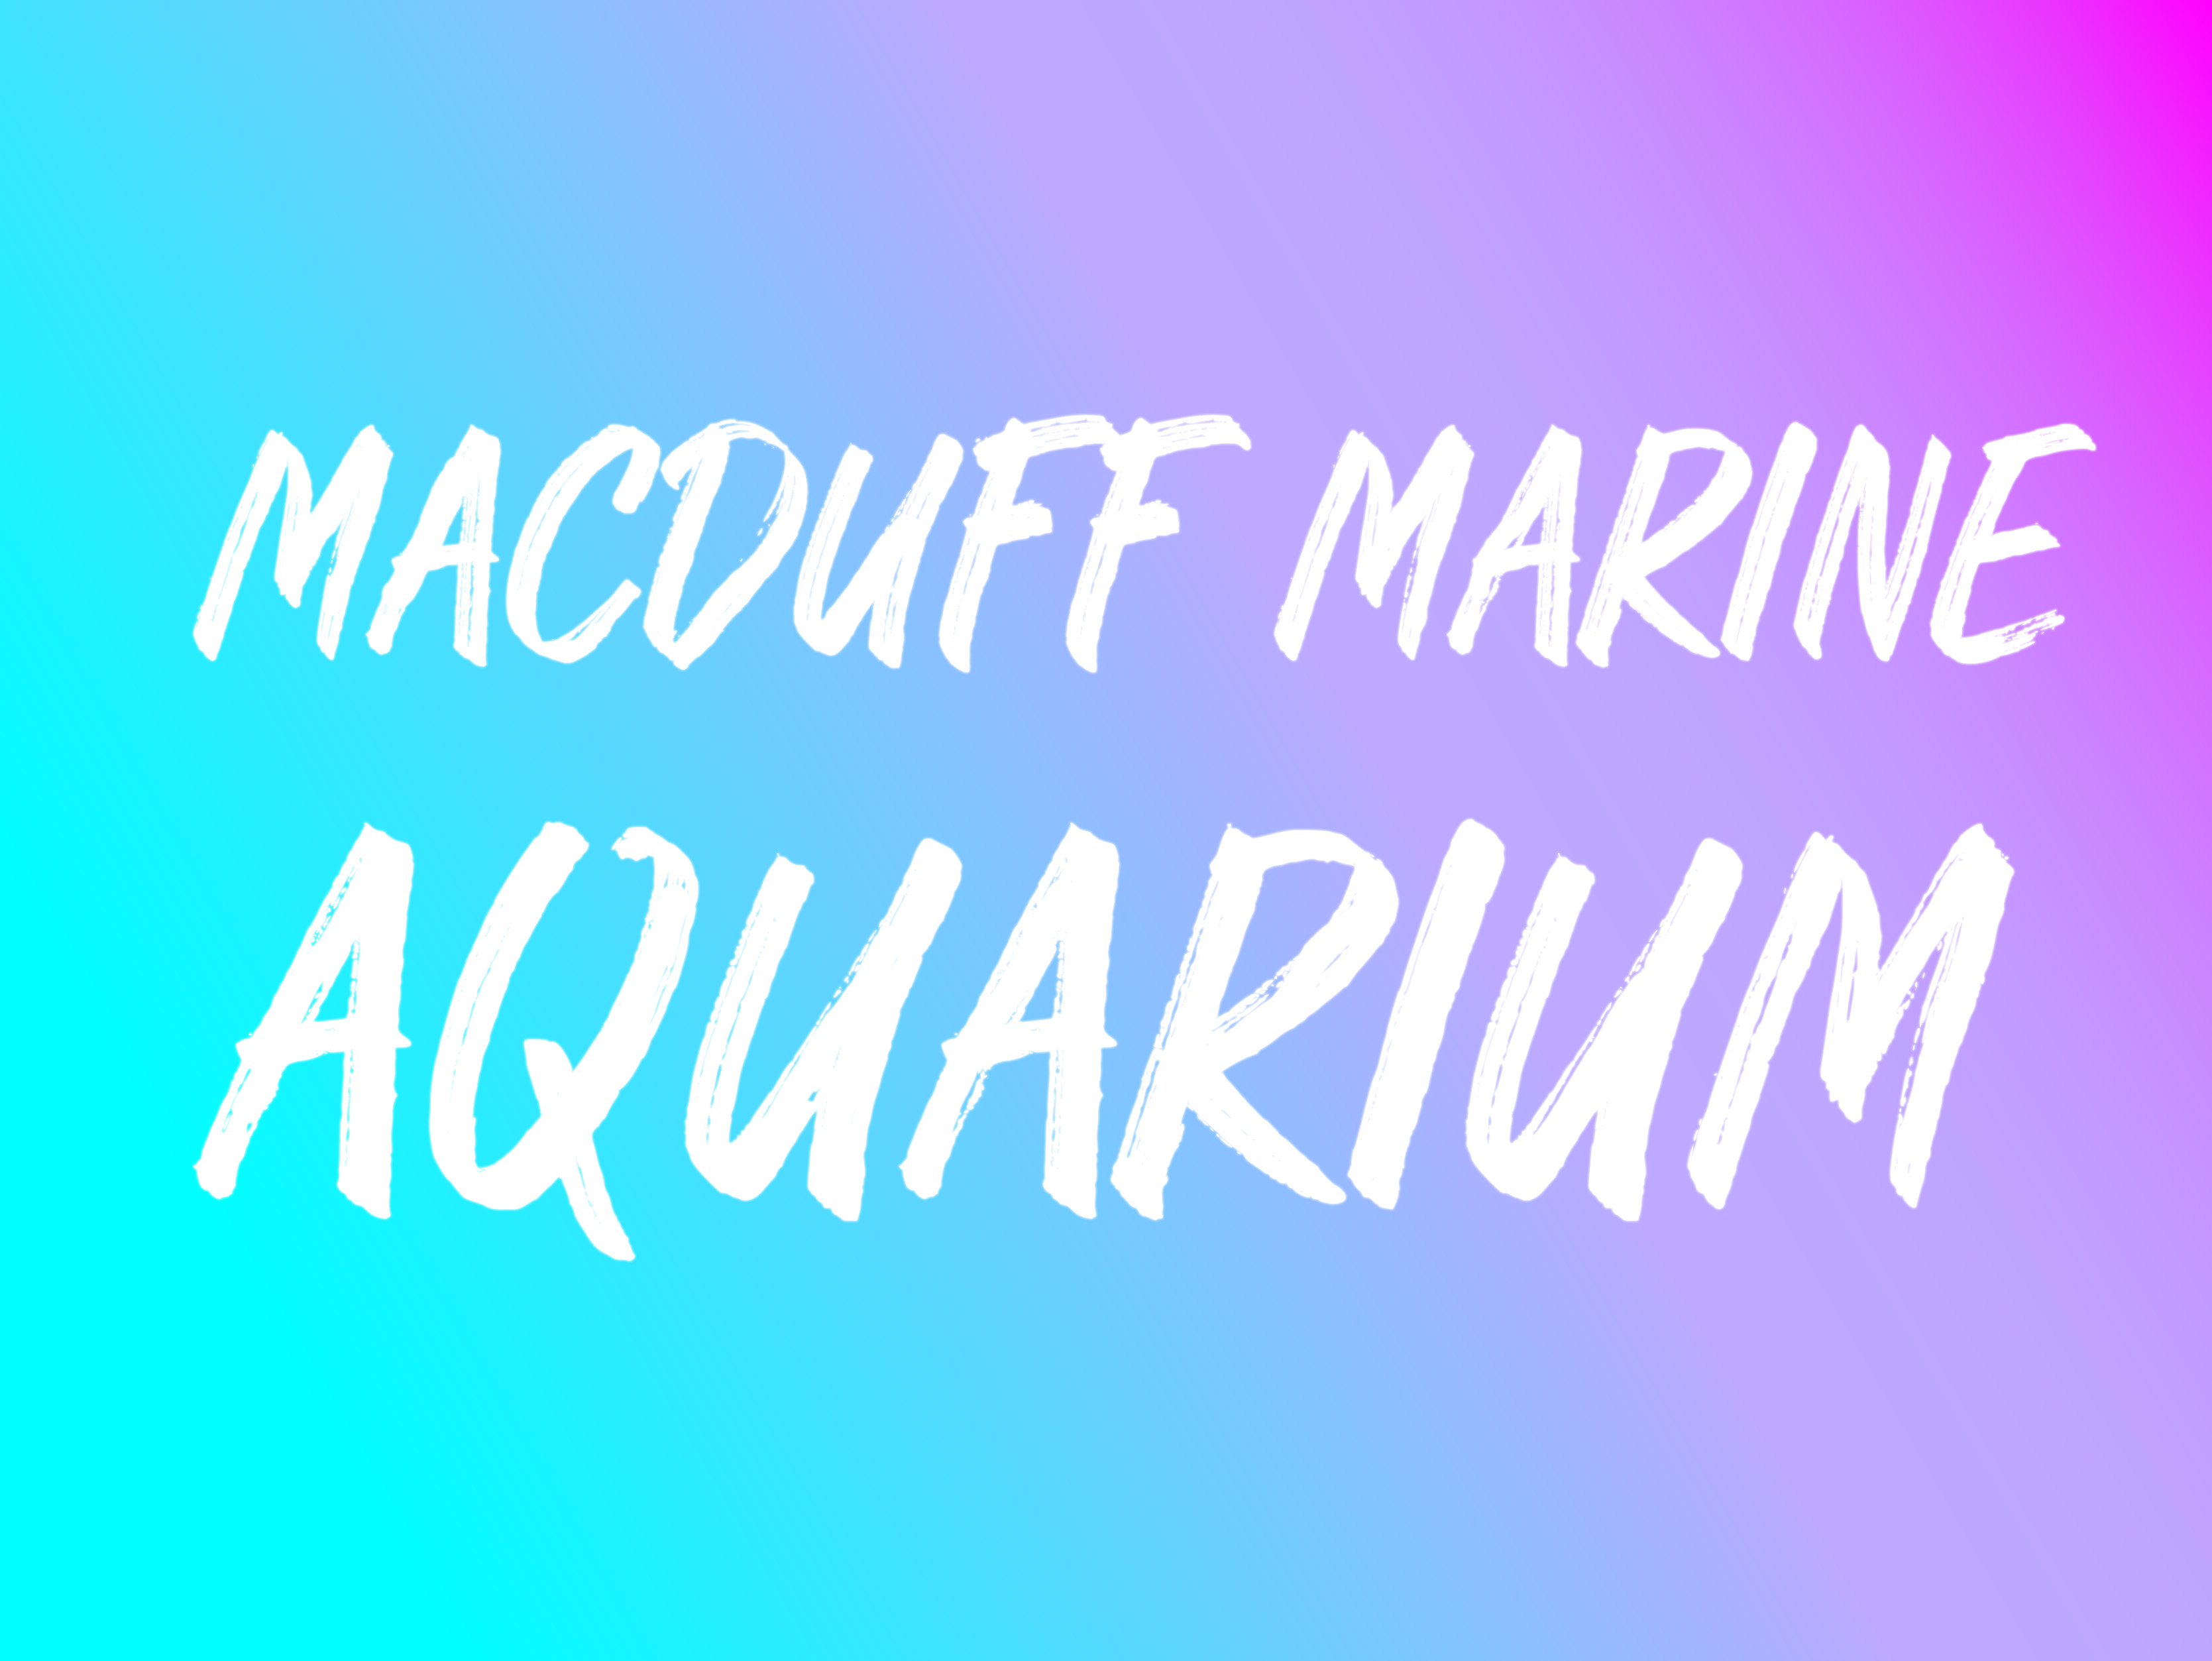 Macduff Marine Aquarium graphic